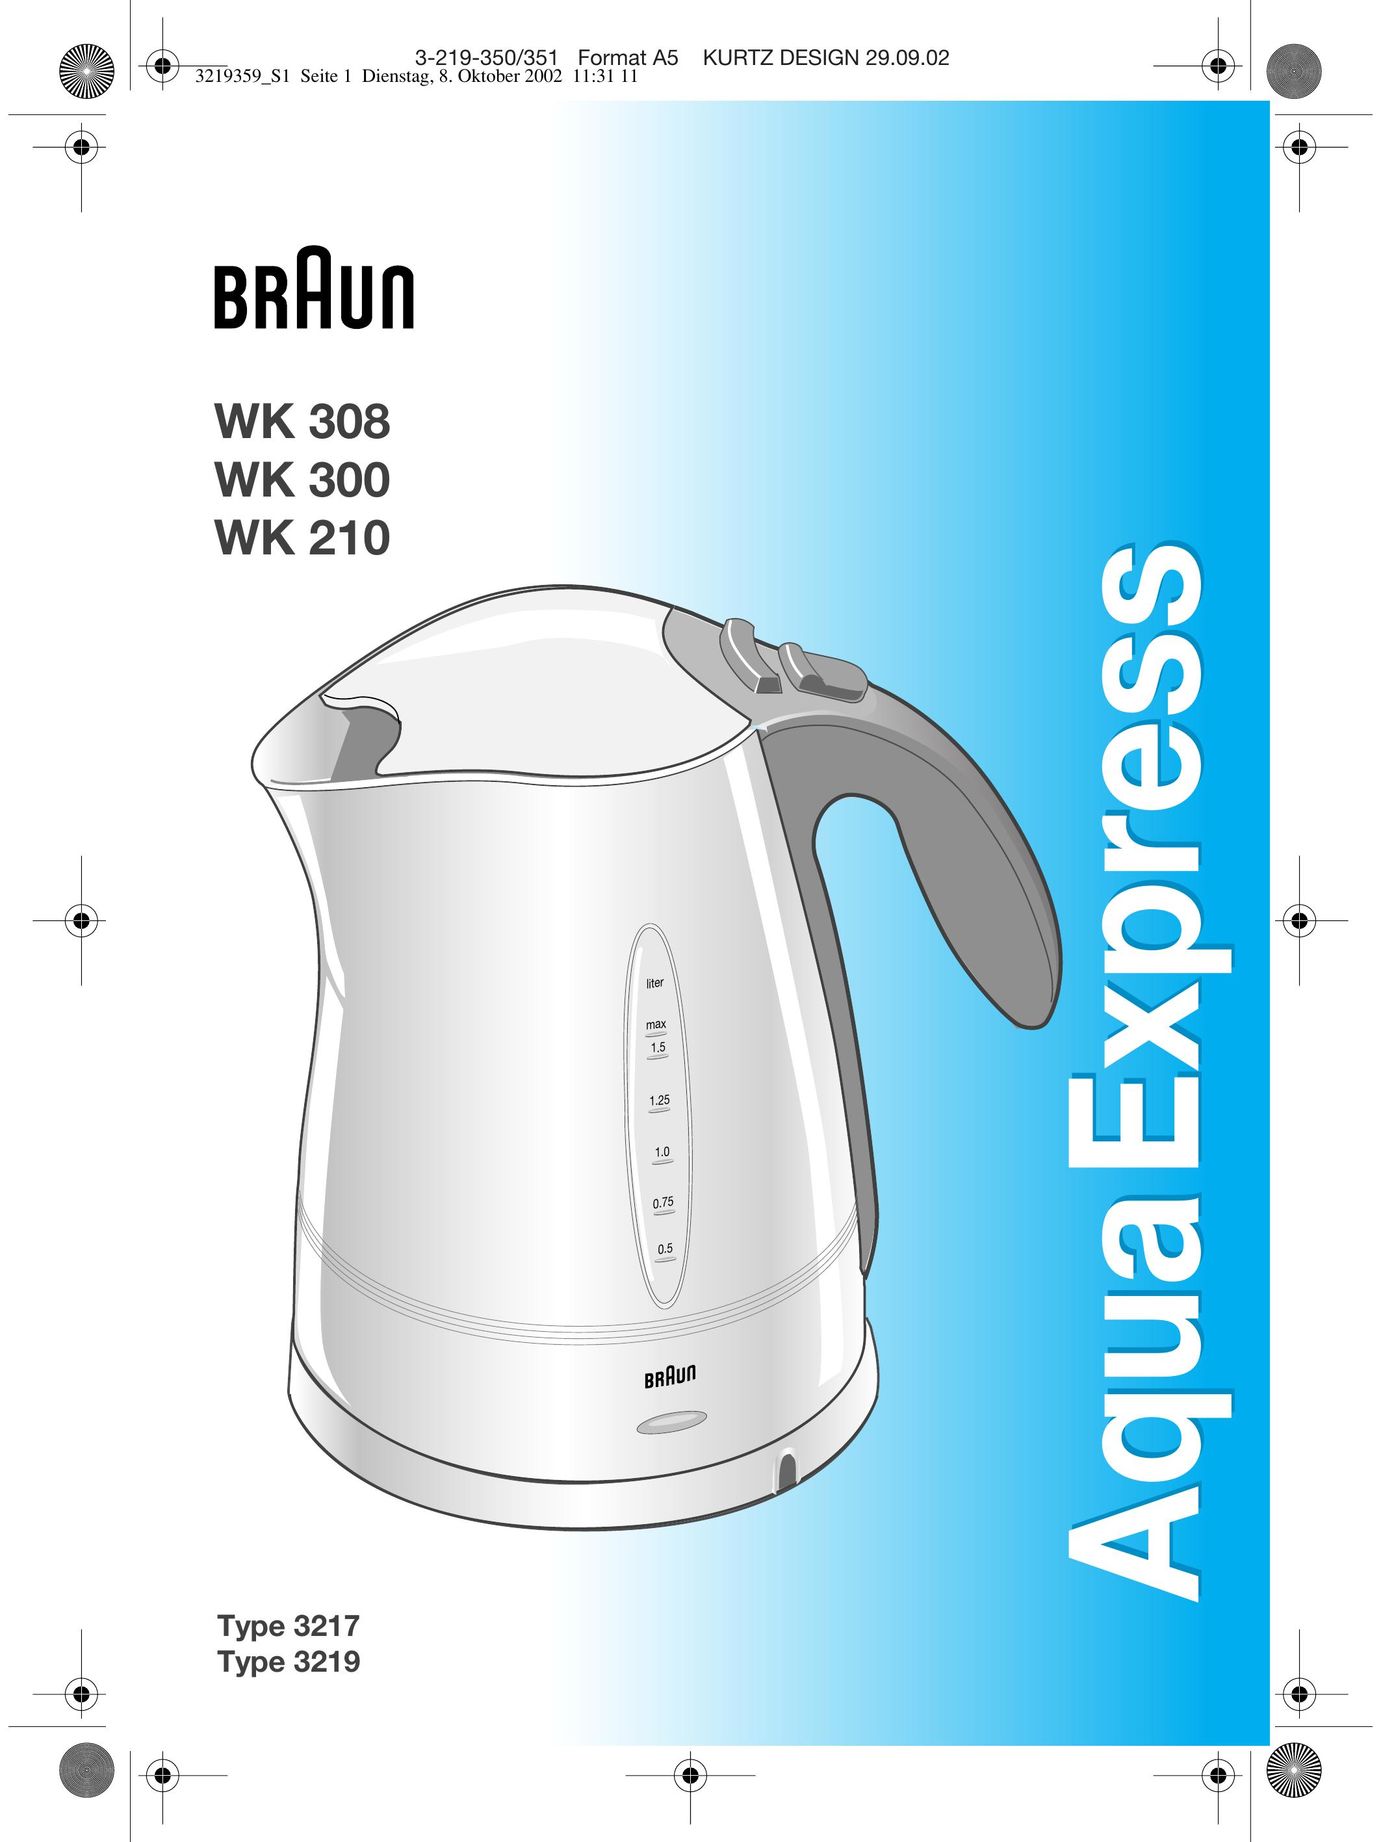 Braun WK 308 Water Heater User Manual